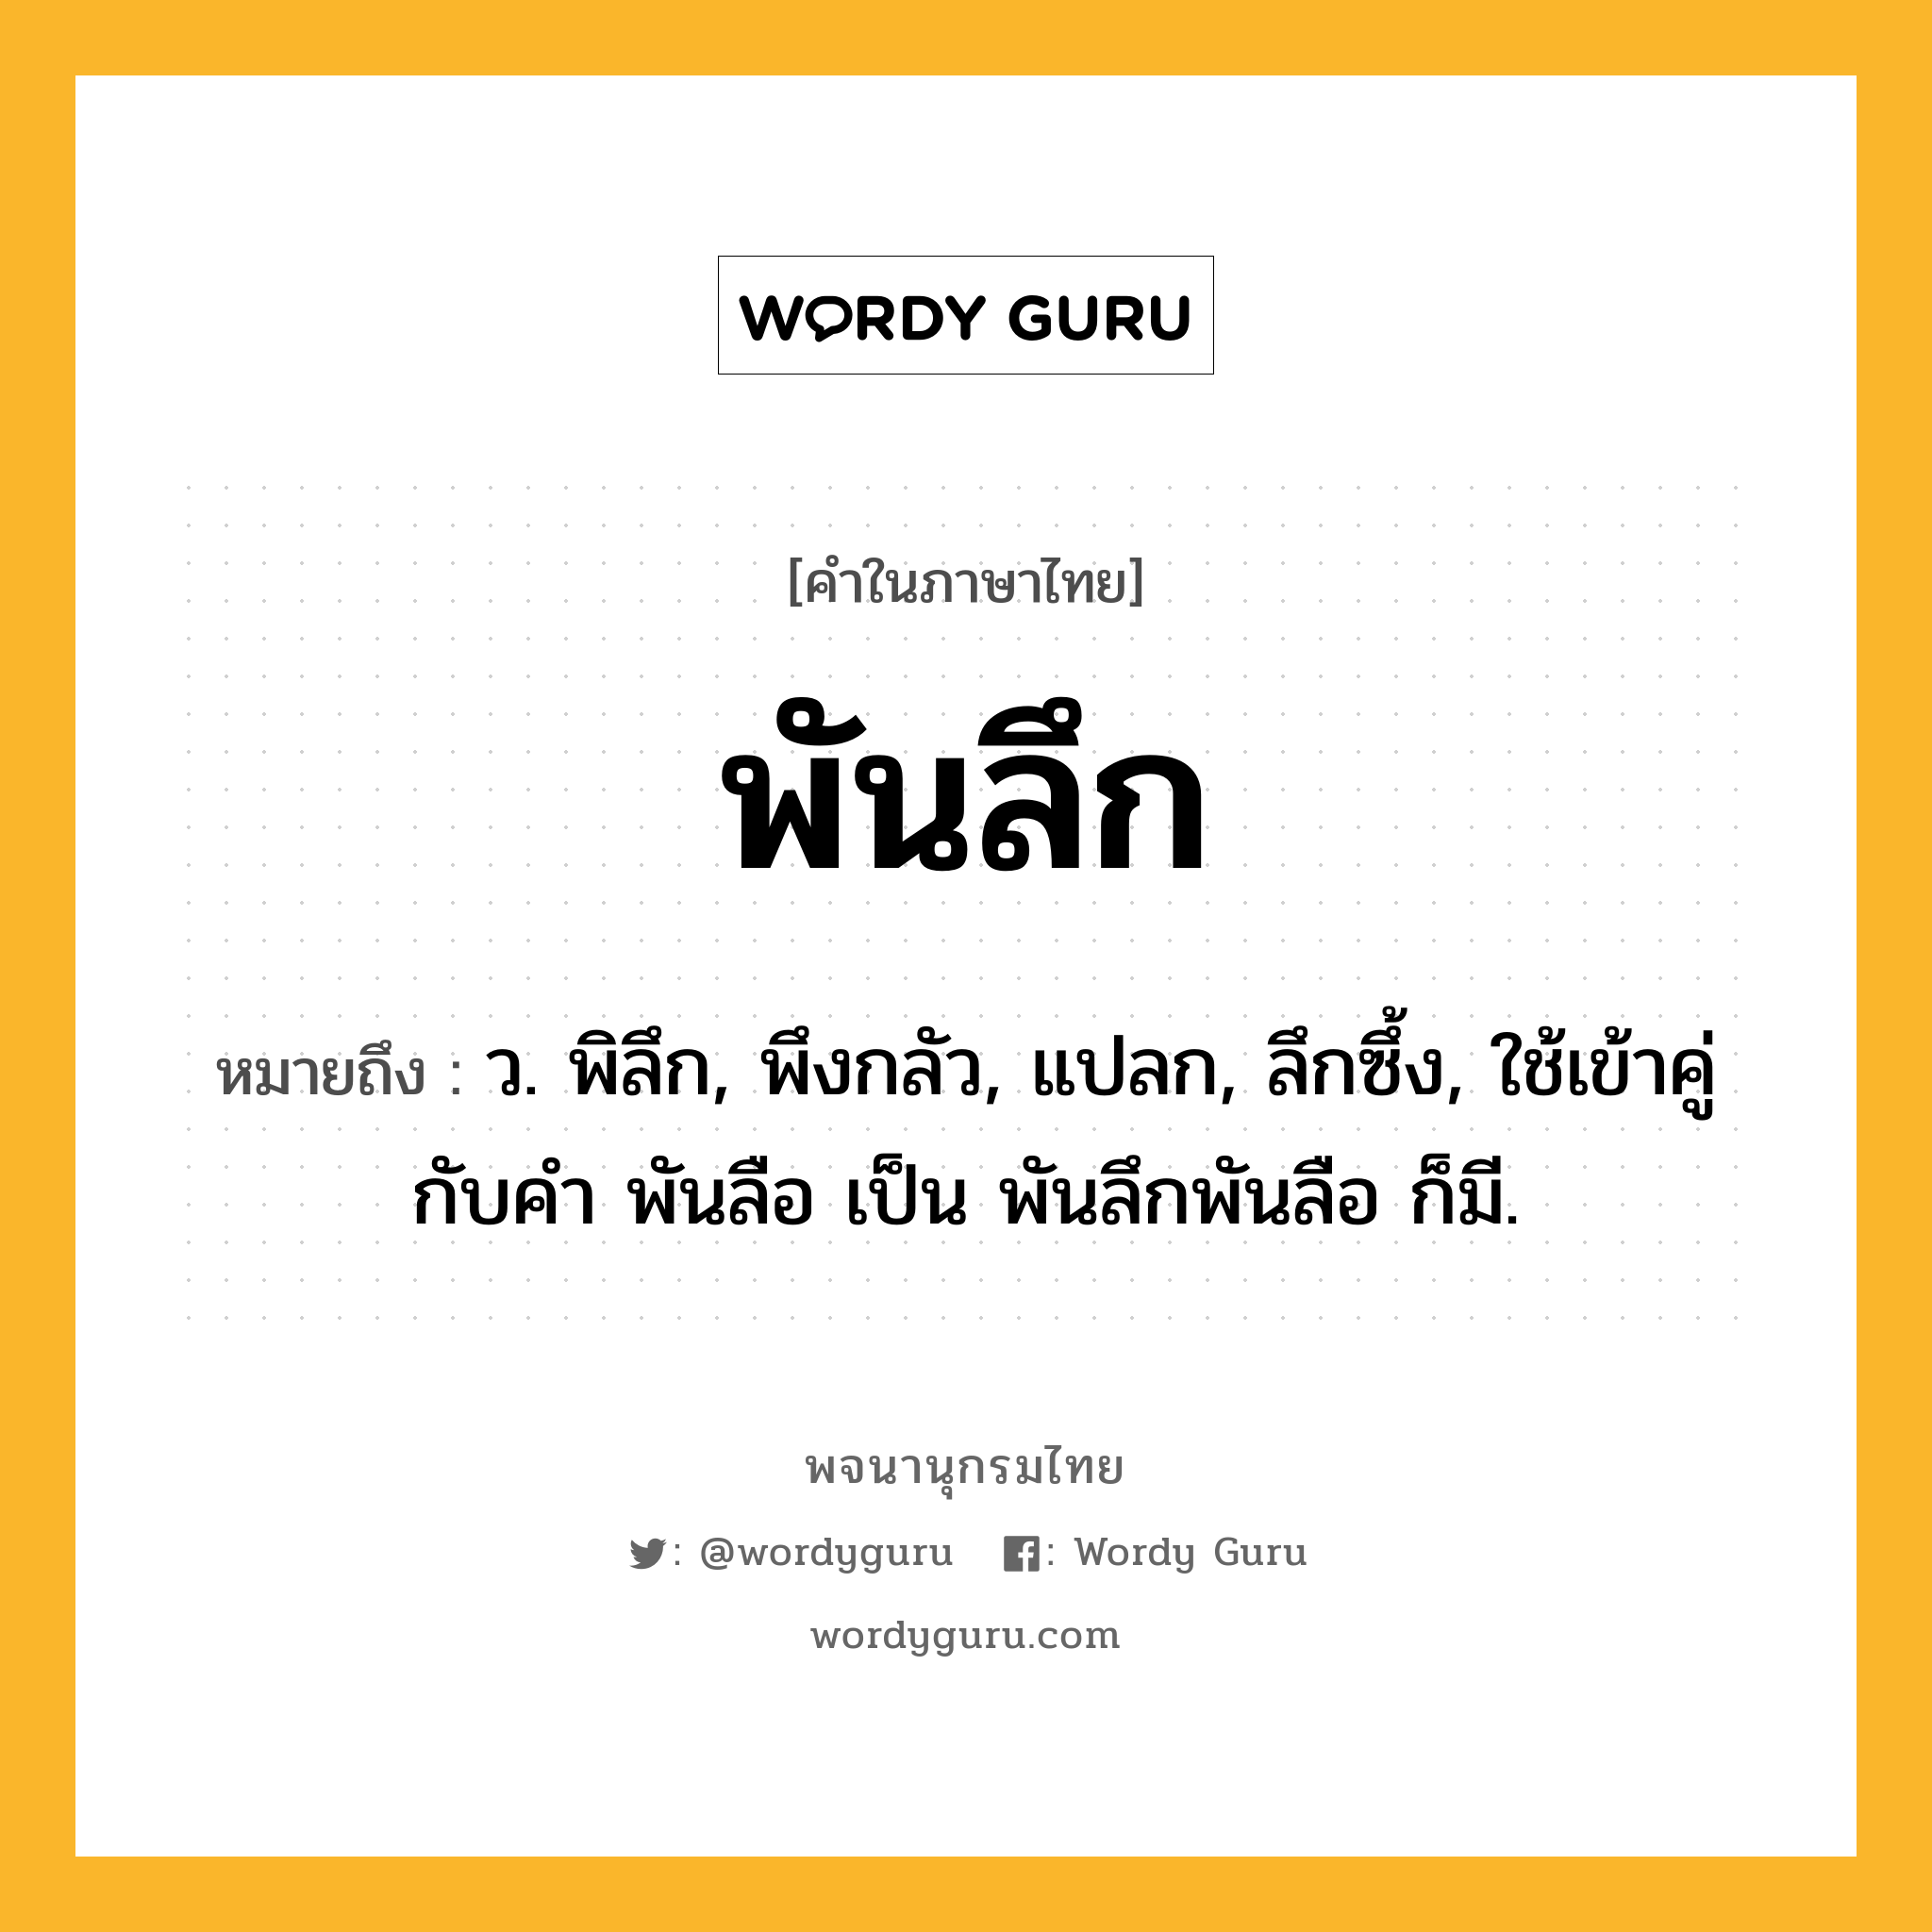 พันลึก หมายถึงอะไร?, คำในภาษาไทย พันลึก หมายถึง ว. พิลึก, พึงกลัว, แปลก, ลึกซึ้ง, ใช้เข้าคู่กับคํา พันลือ เป็น พันลึกพันลือ ก็มี.